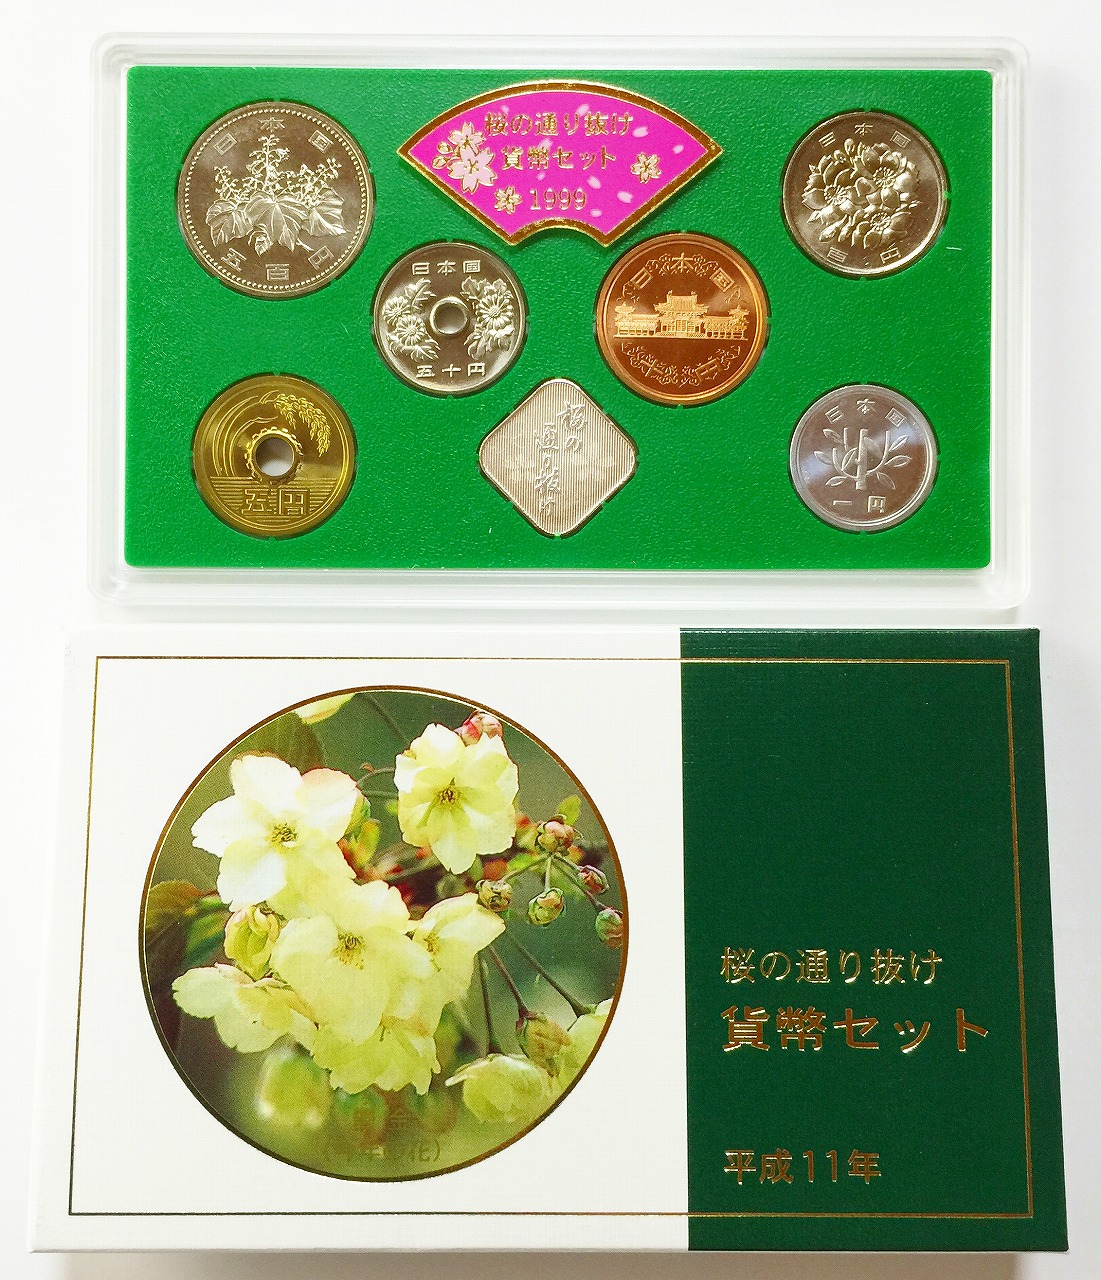 桜の通り抜け貨幣セット 平成11年 1999年 ミントセット(49728)